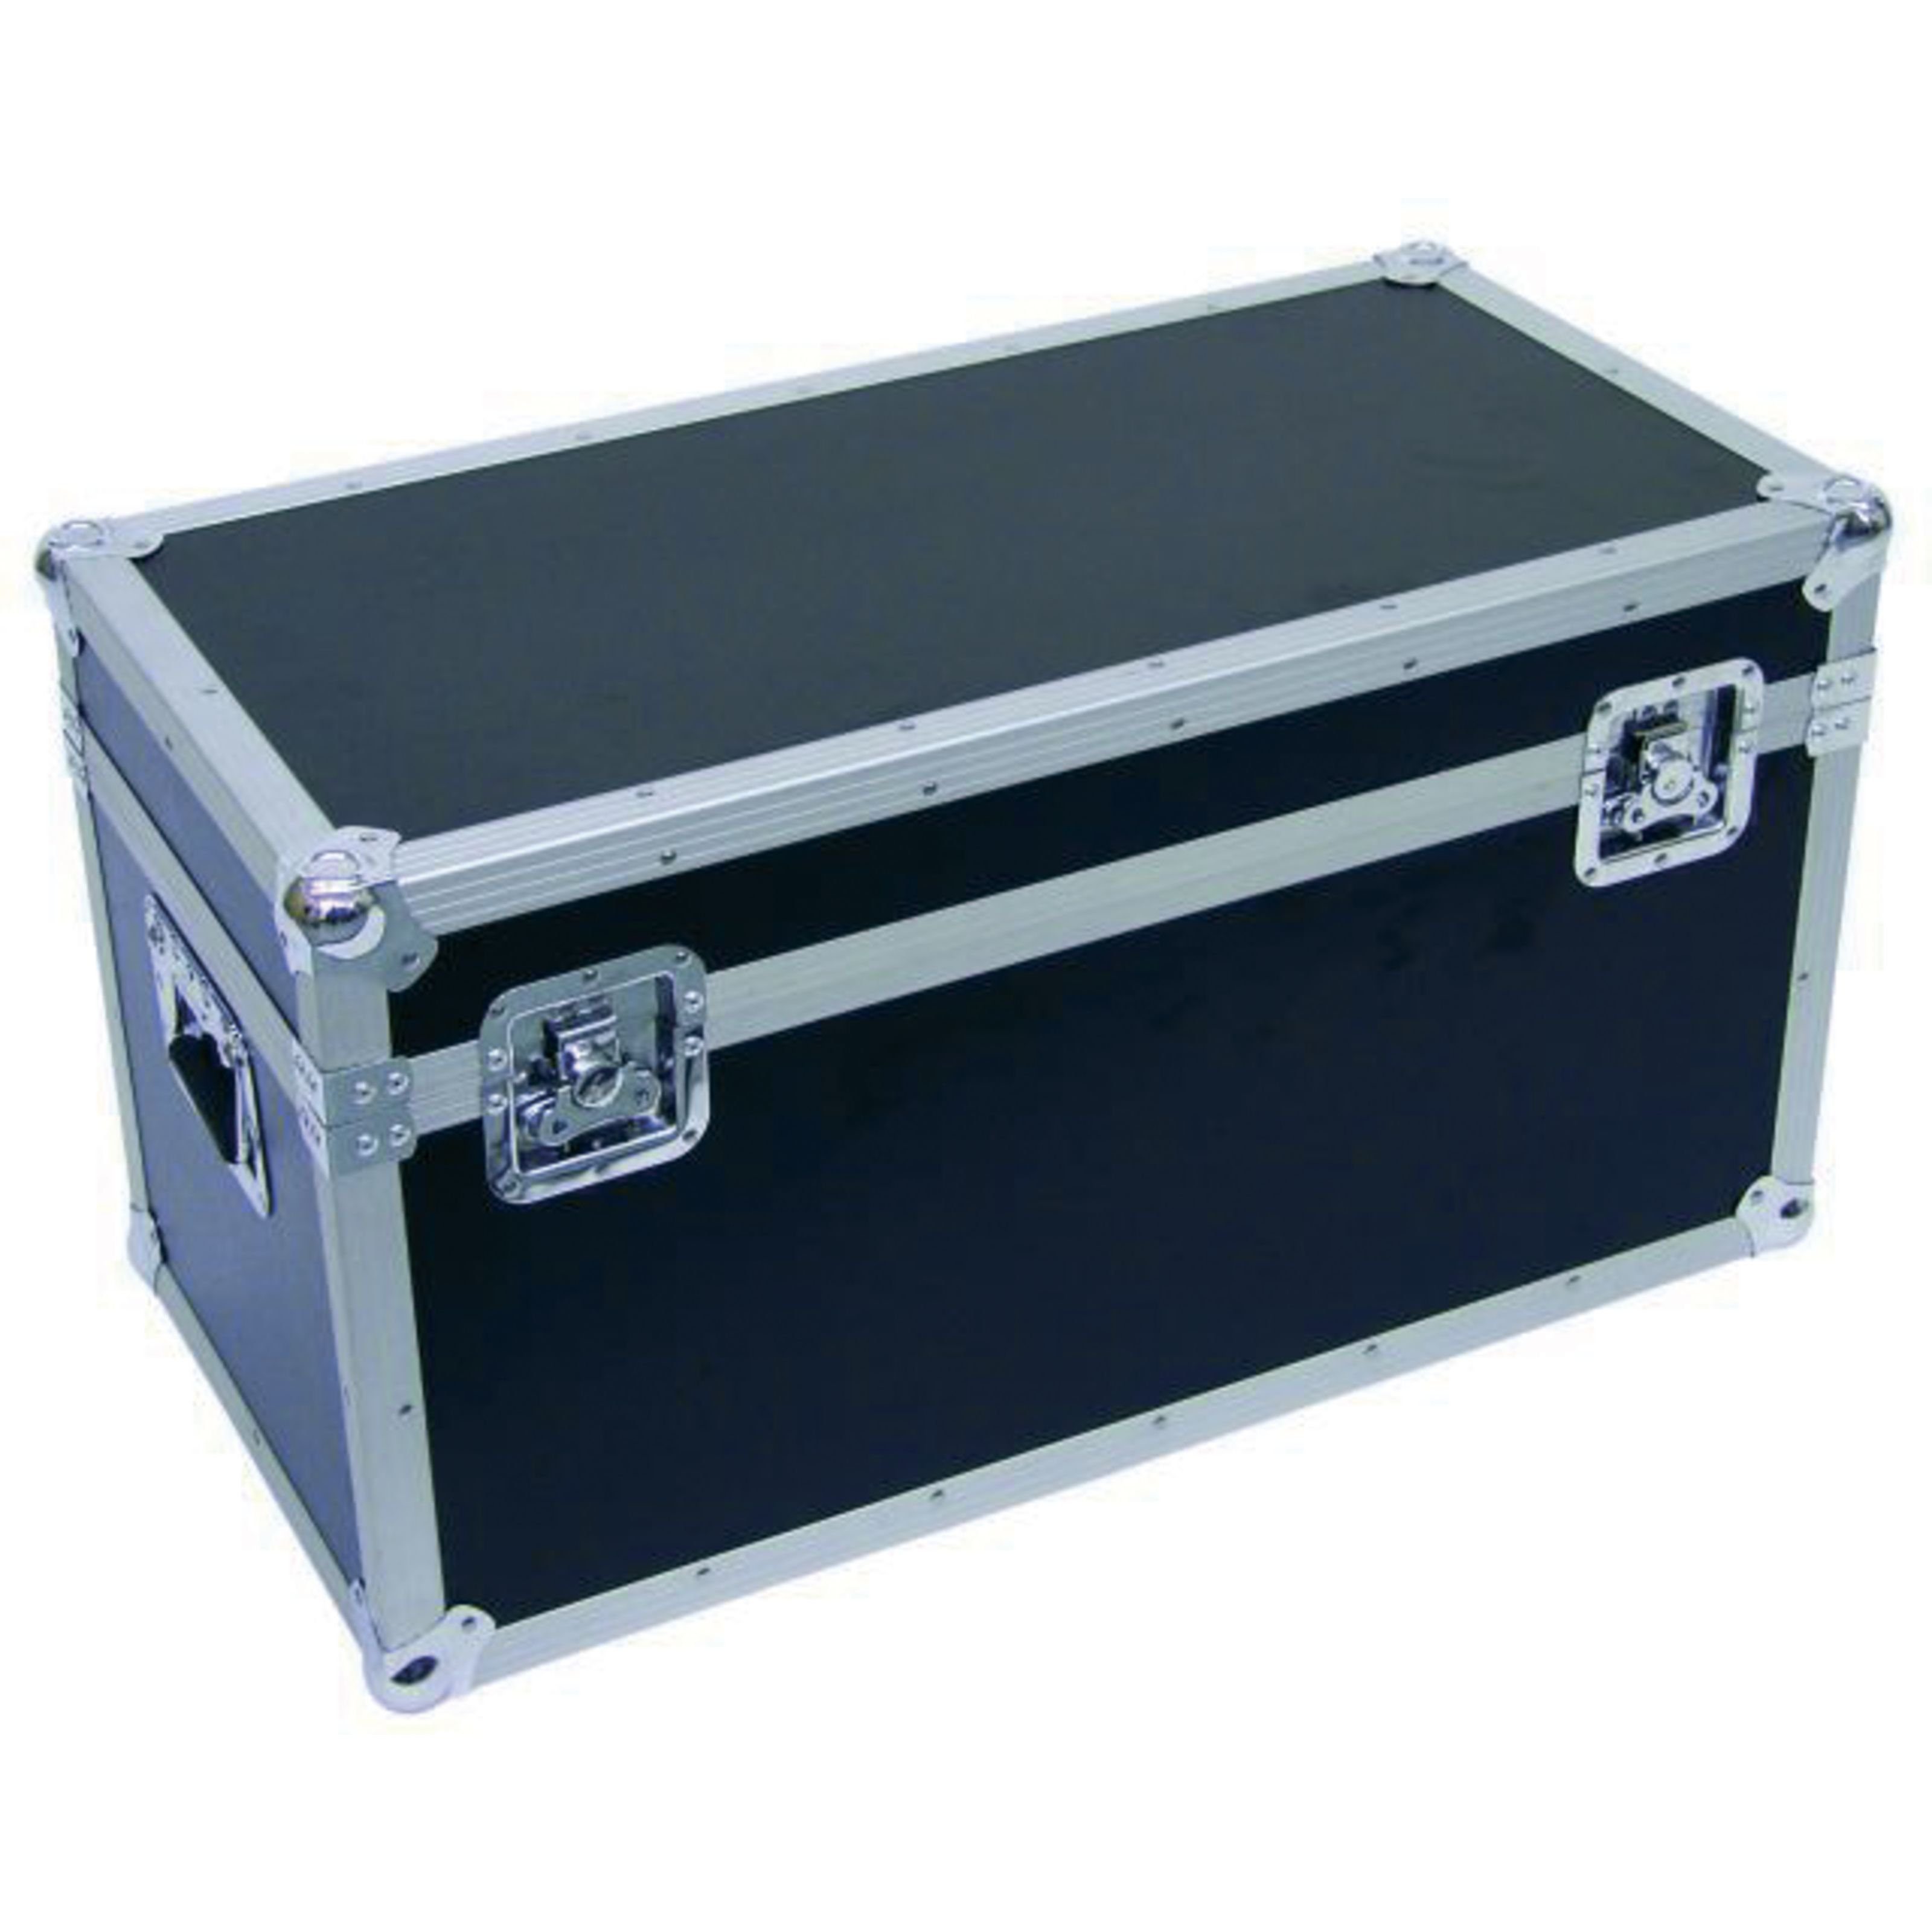 EUROLITE Koffer, Universal-Transportcase 80cm x 40cm - Case für Licht Equipment